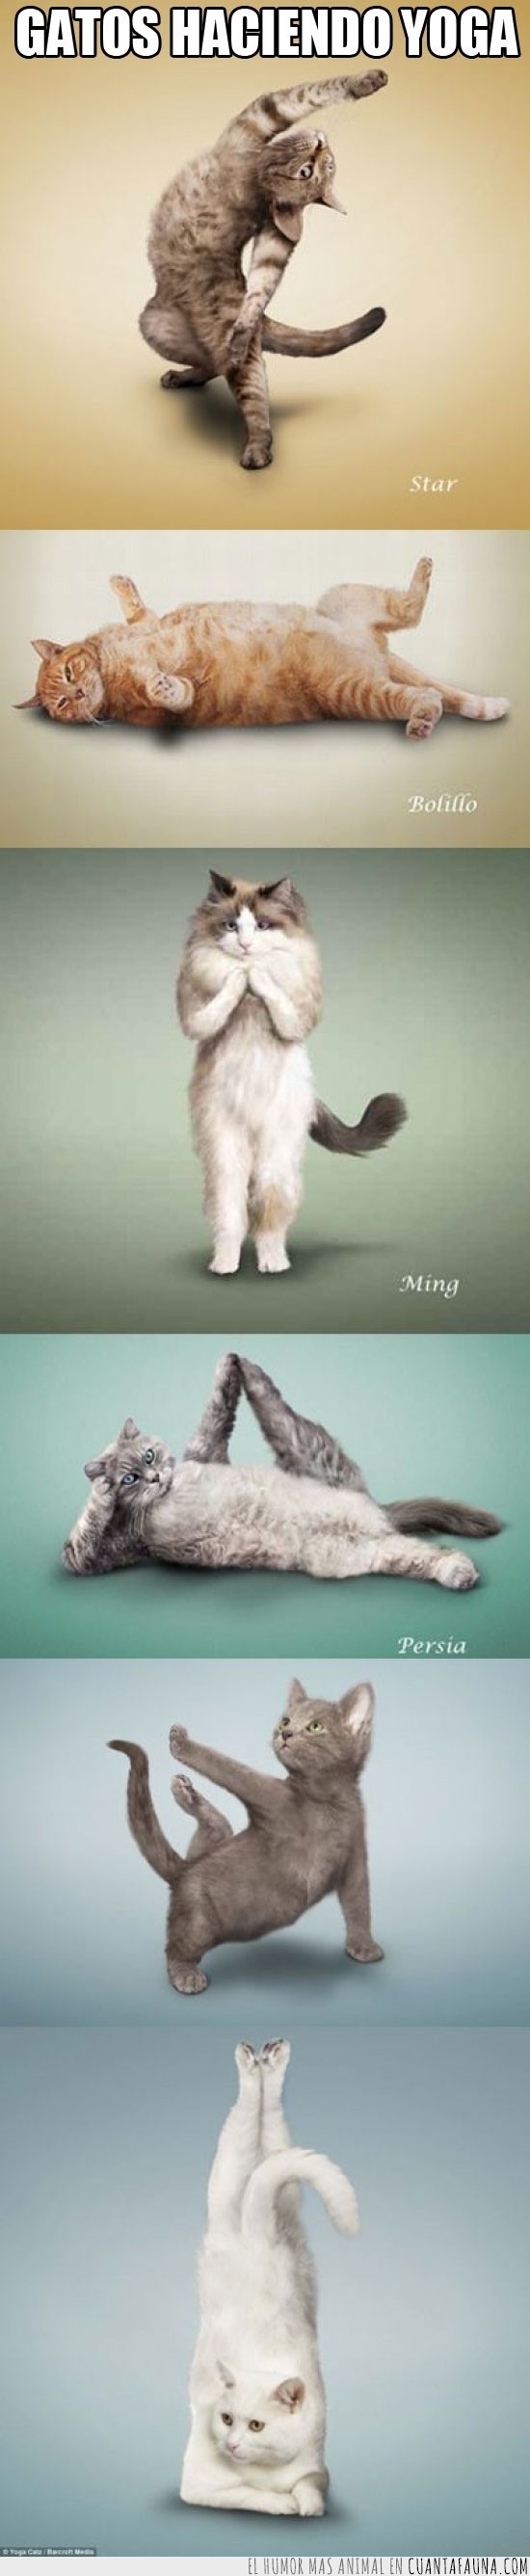 yoga,gato,gatos,cat,yoga cat